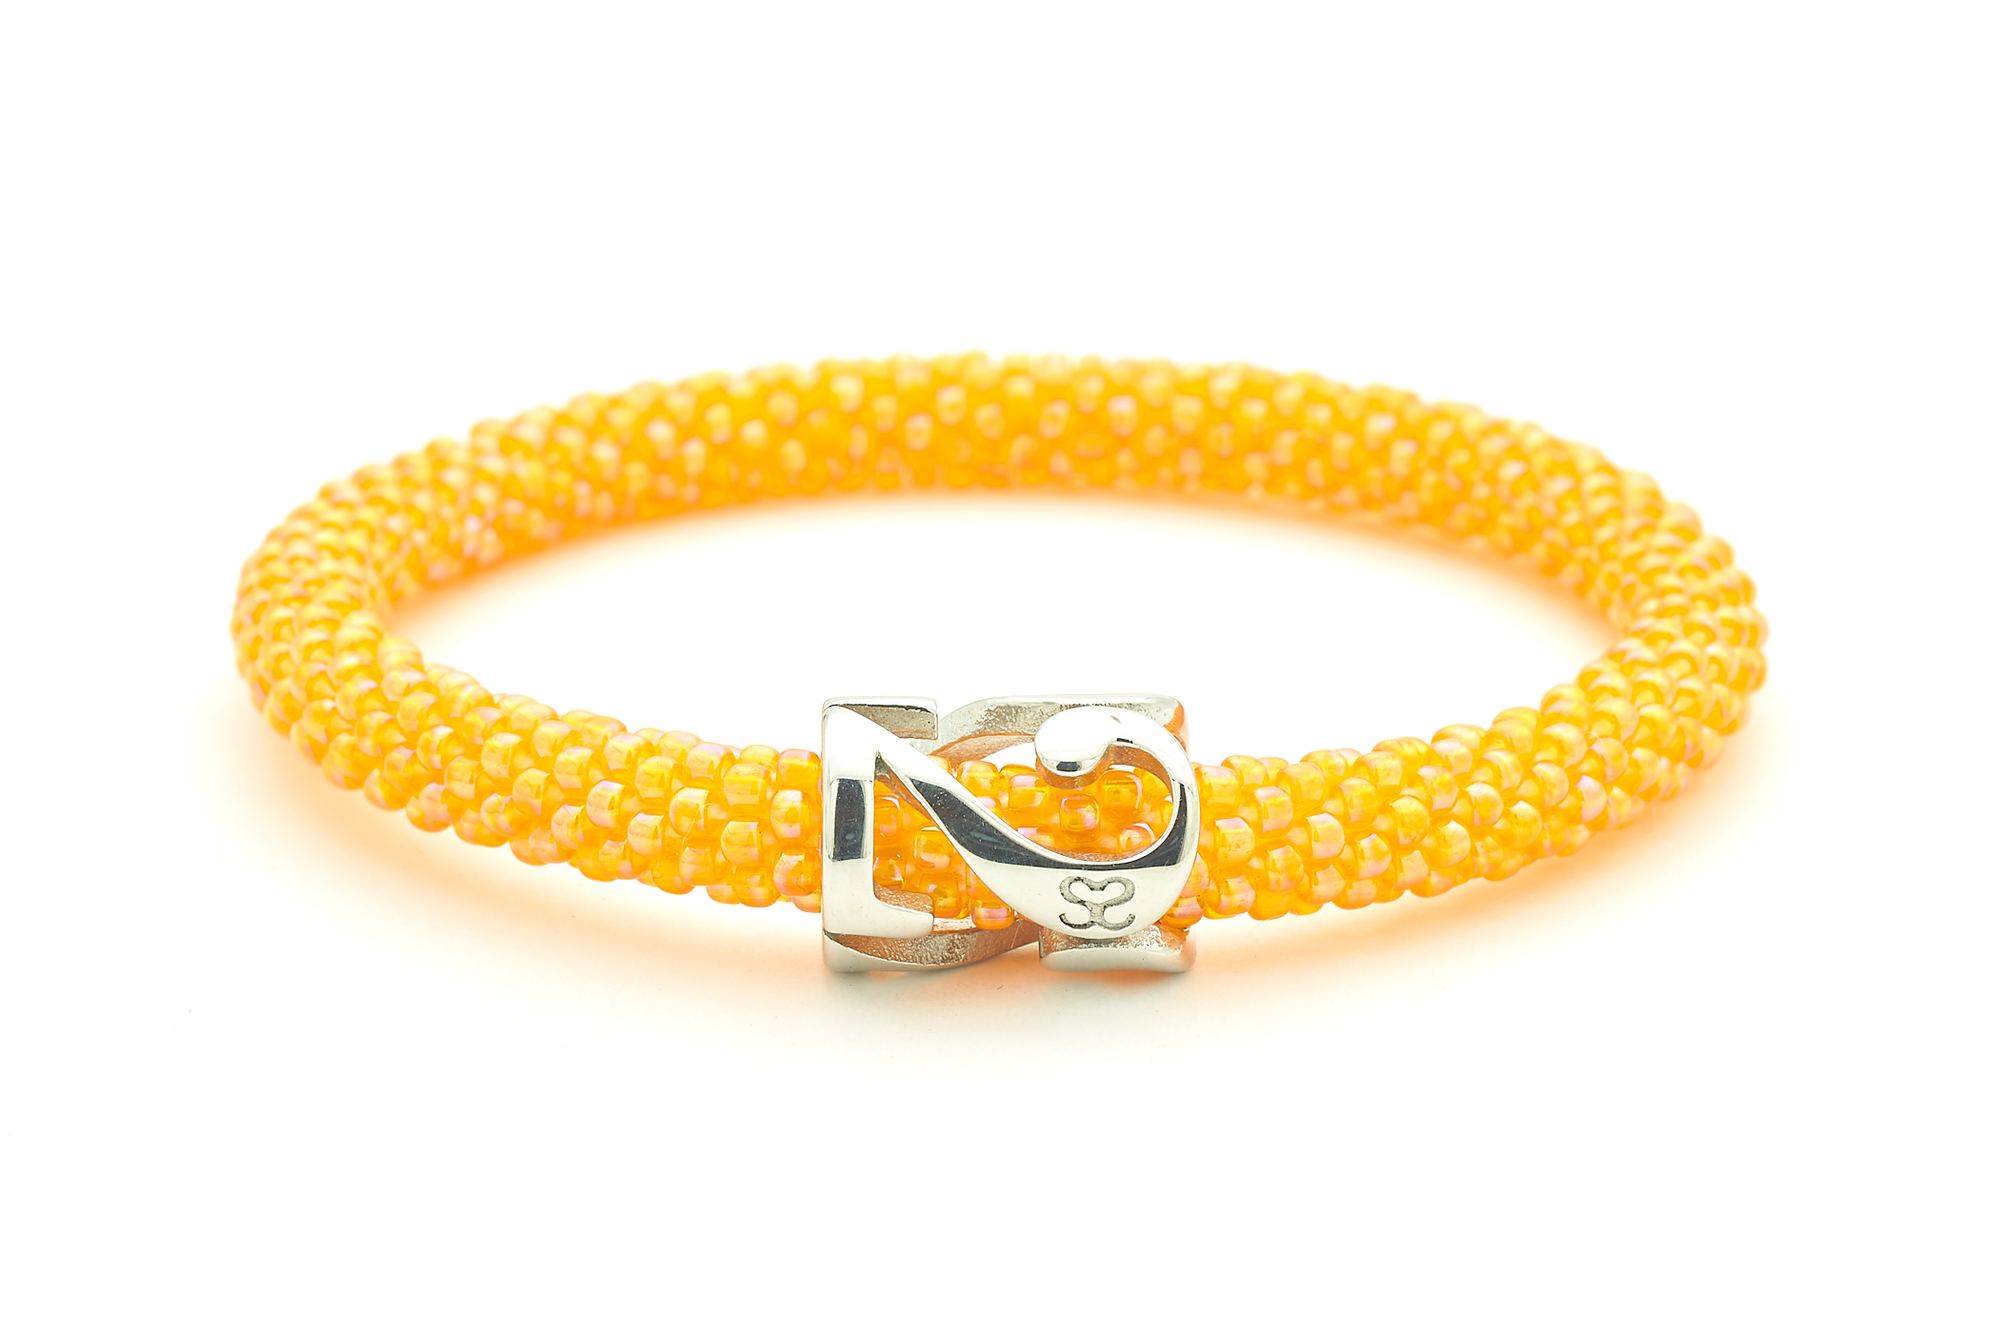 Sashka Co. Charm Bracelet Orange / Silver 222 Angel Charm Bracelet - Extended 8"